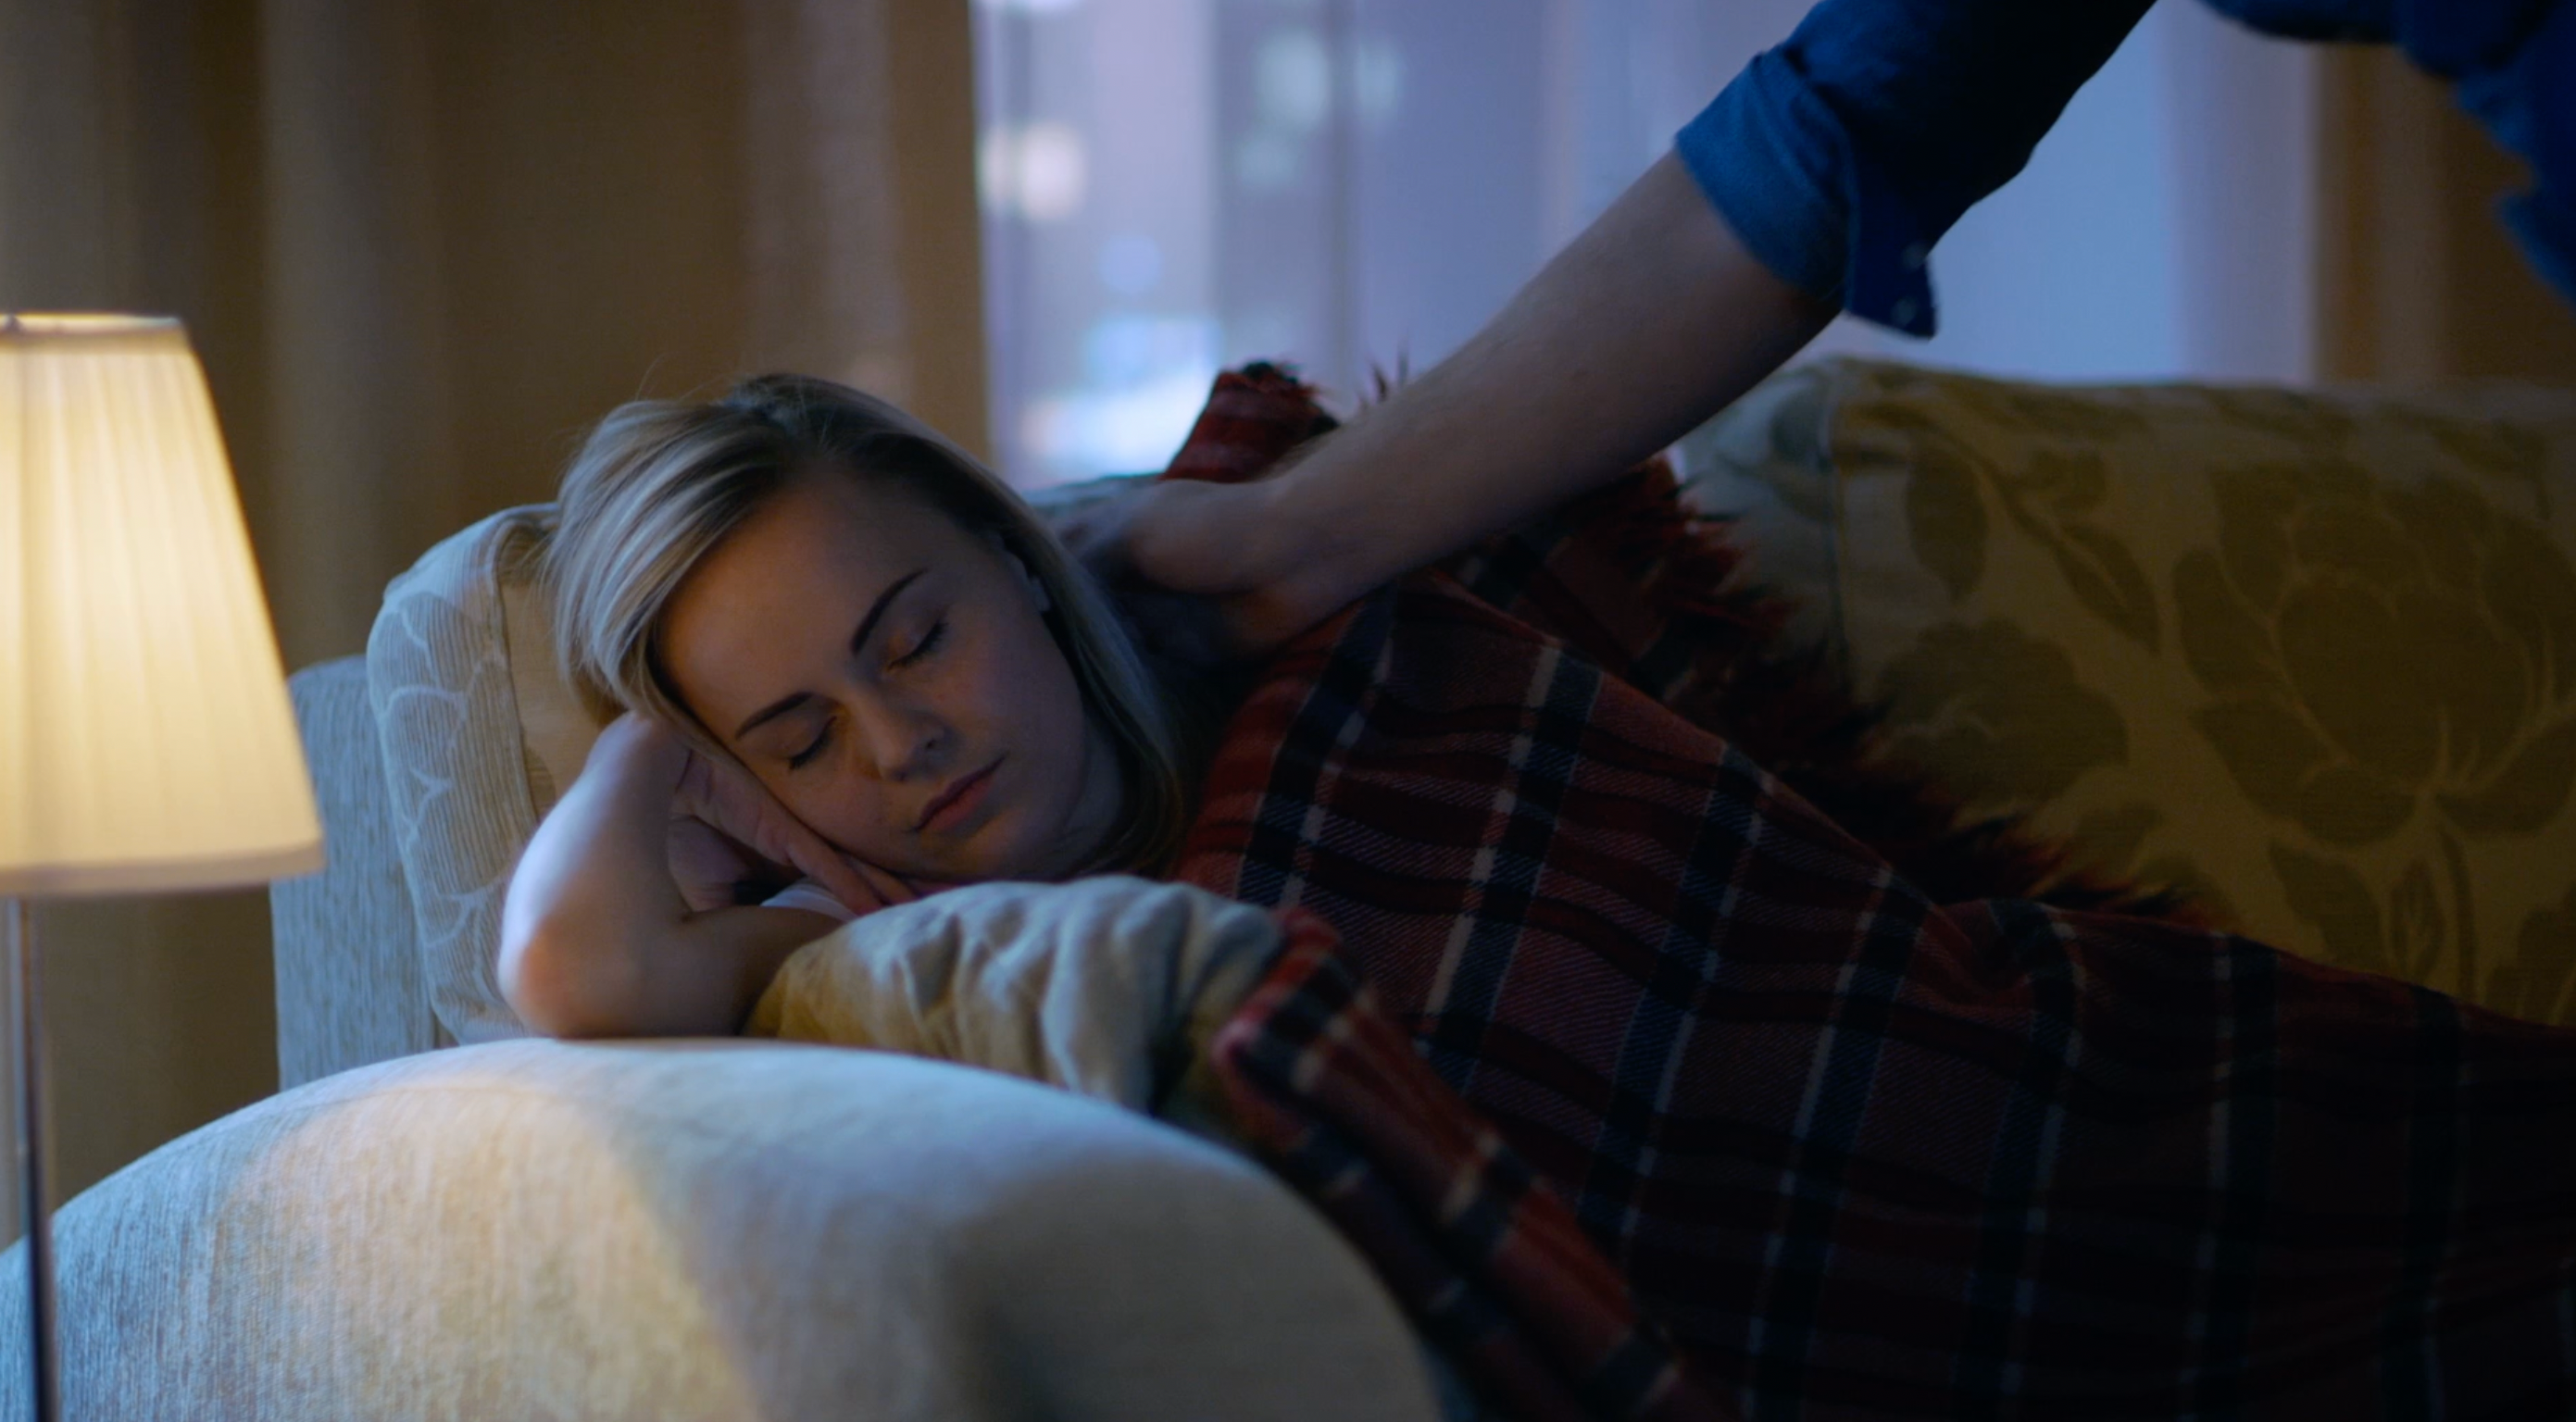 Imagen estática del video mostrando un acercamiento de alguien al pendiente de una mujer durmiendo